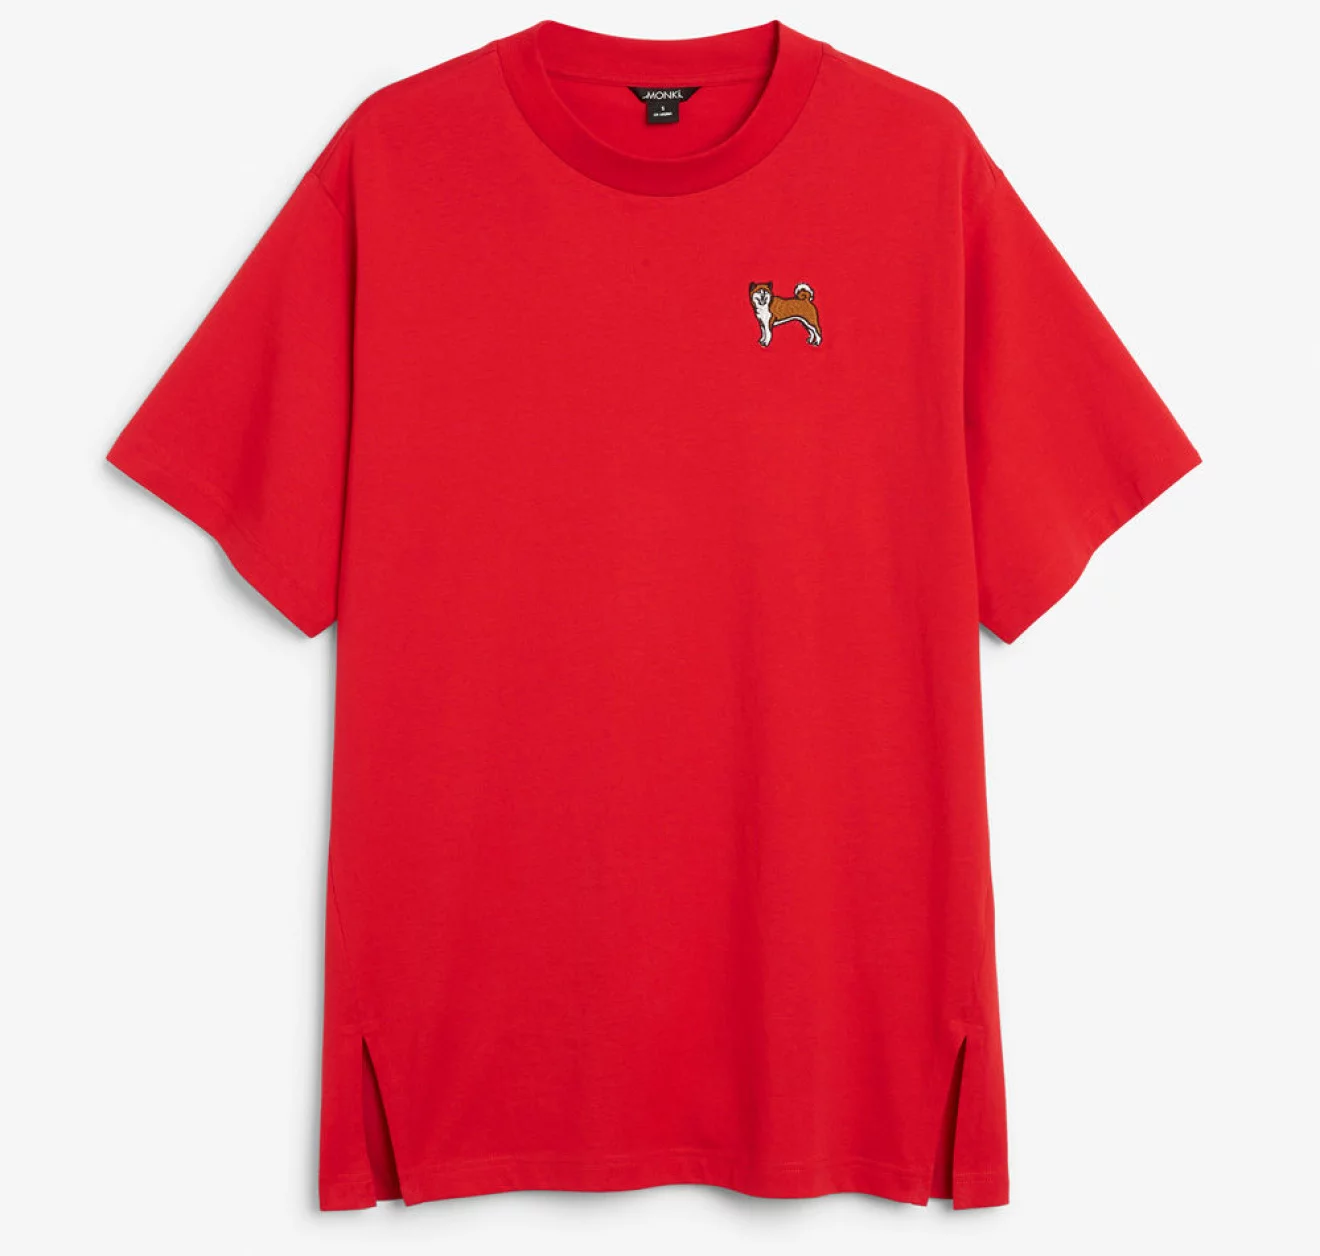 Röd t-shirt i lös modell med hundtryck på.